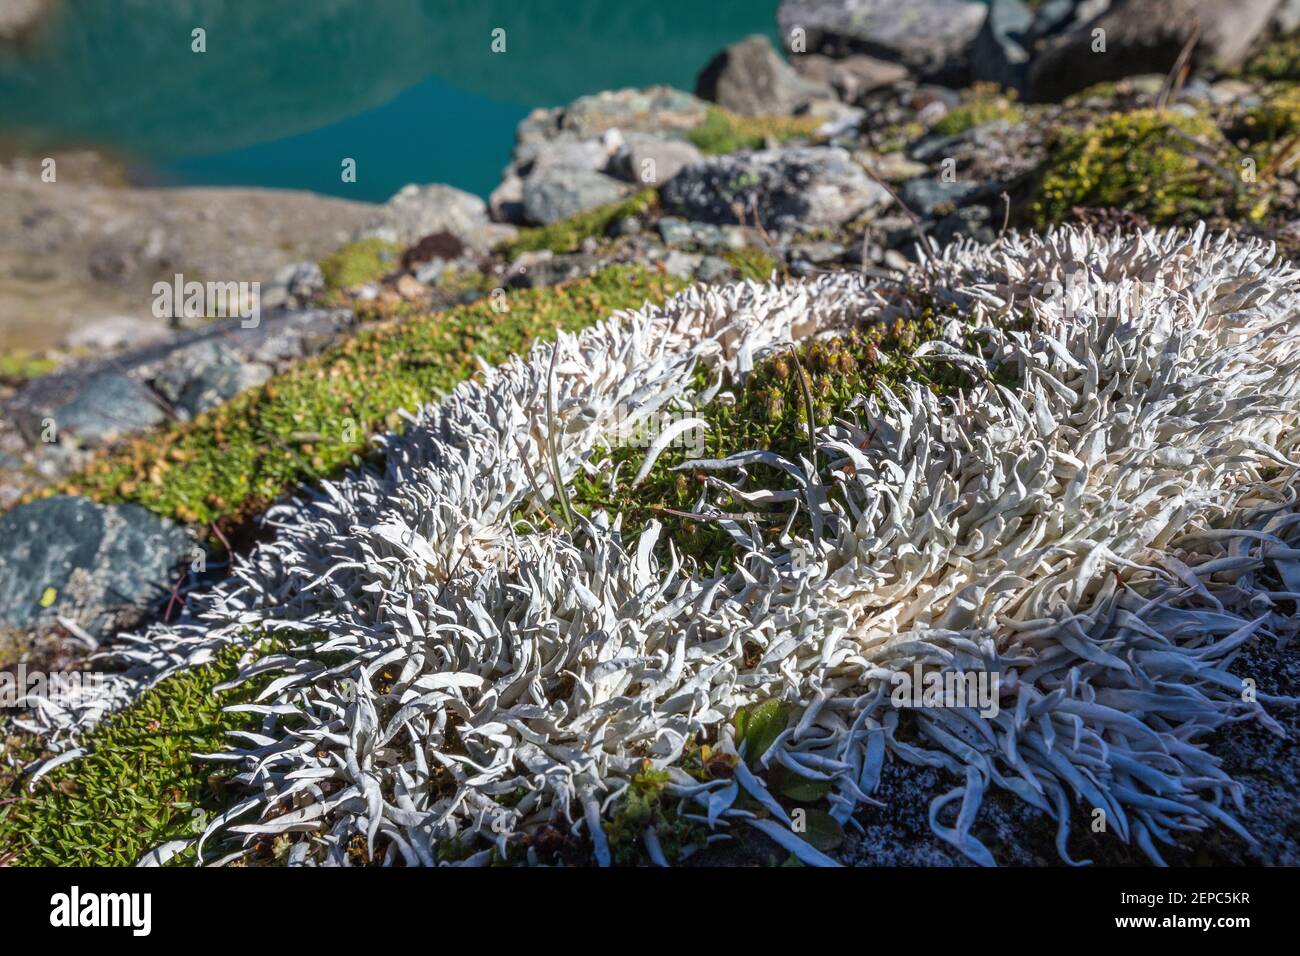 Thamnolia vermicularis lichen. Eissee alpine lake. Timmeltal. Austrian Alps. Europe. Stock Photo